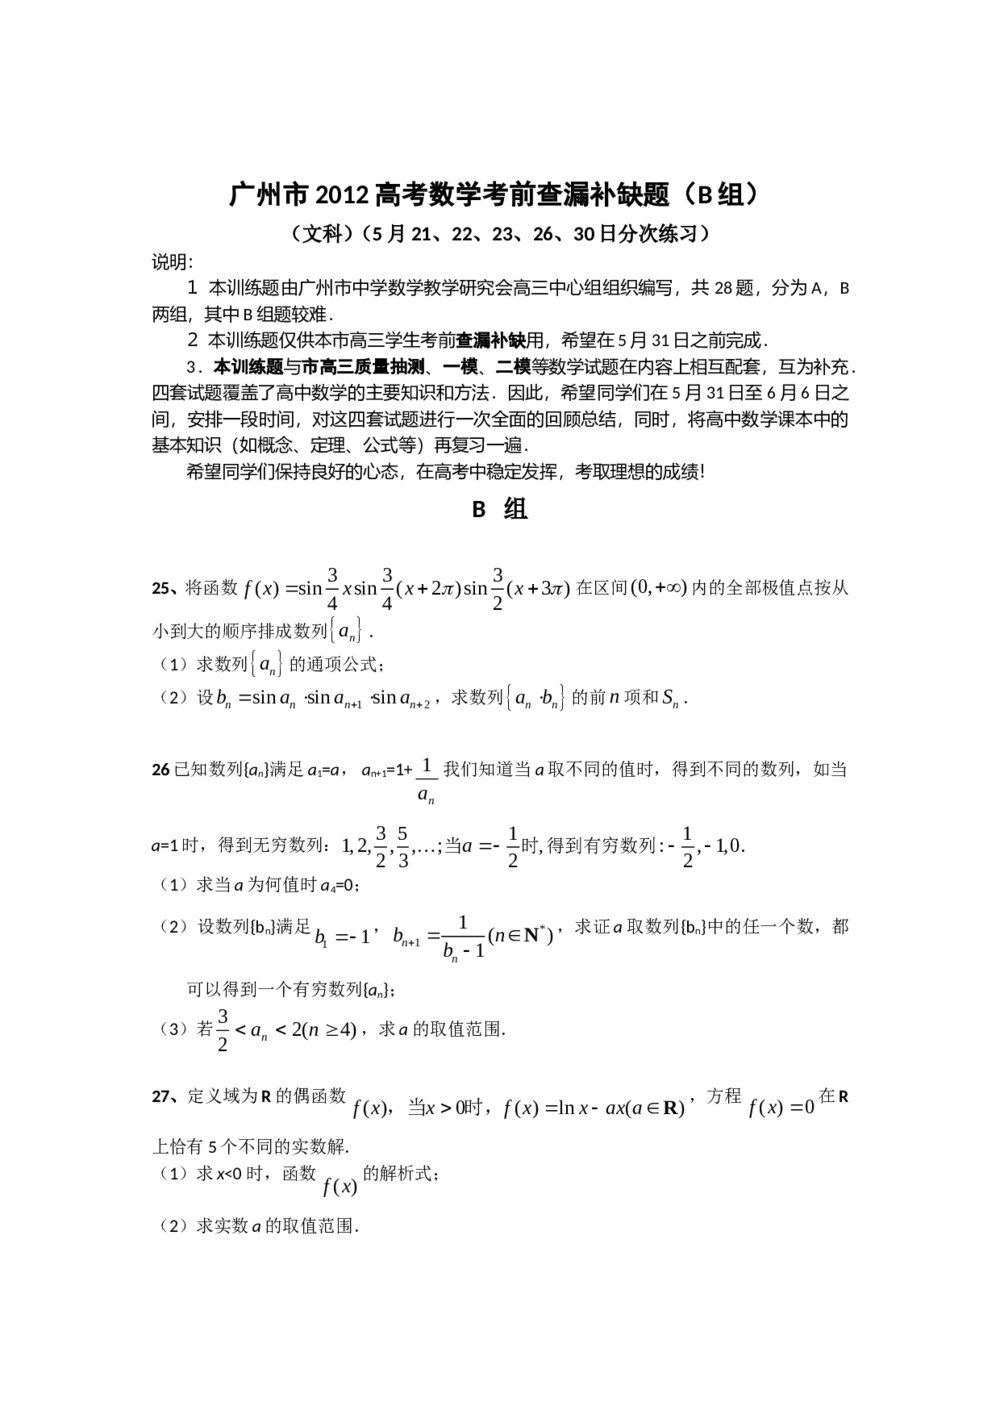 广东省广州市2012年高考考前查漏补缺题(数学文科B组)